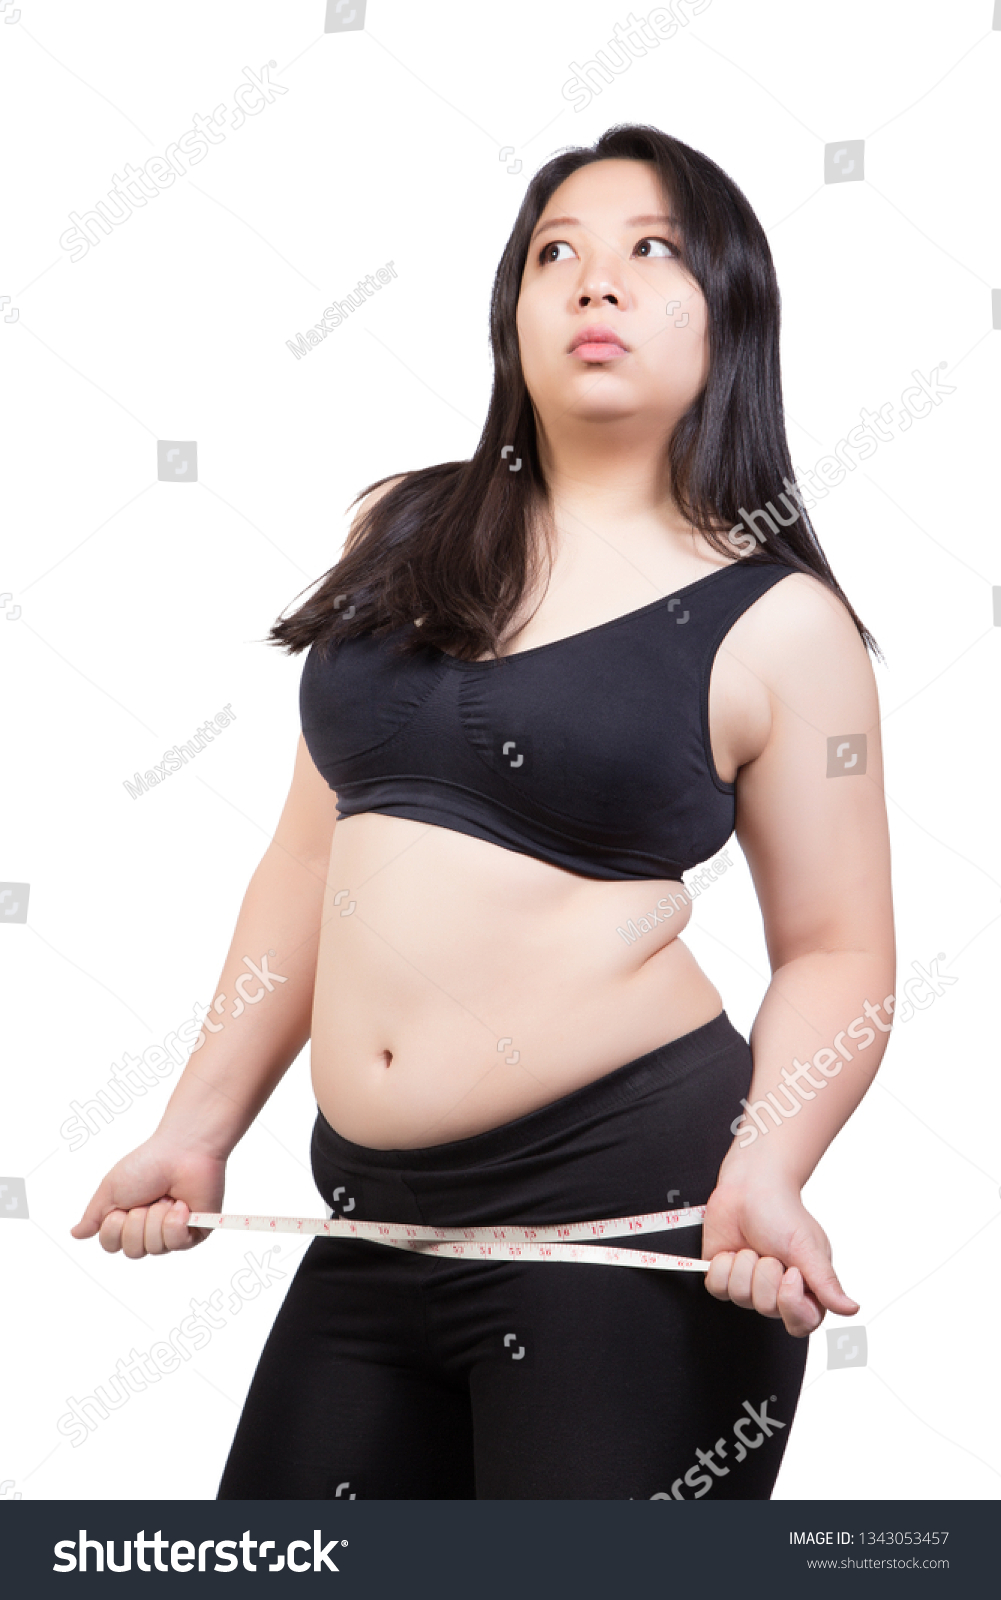 Sexy Fat Women Pics